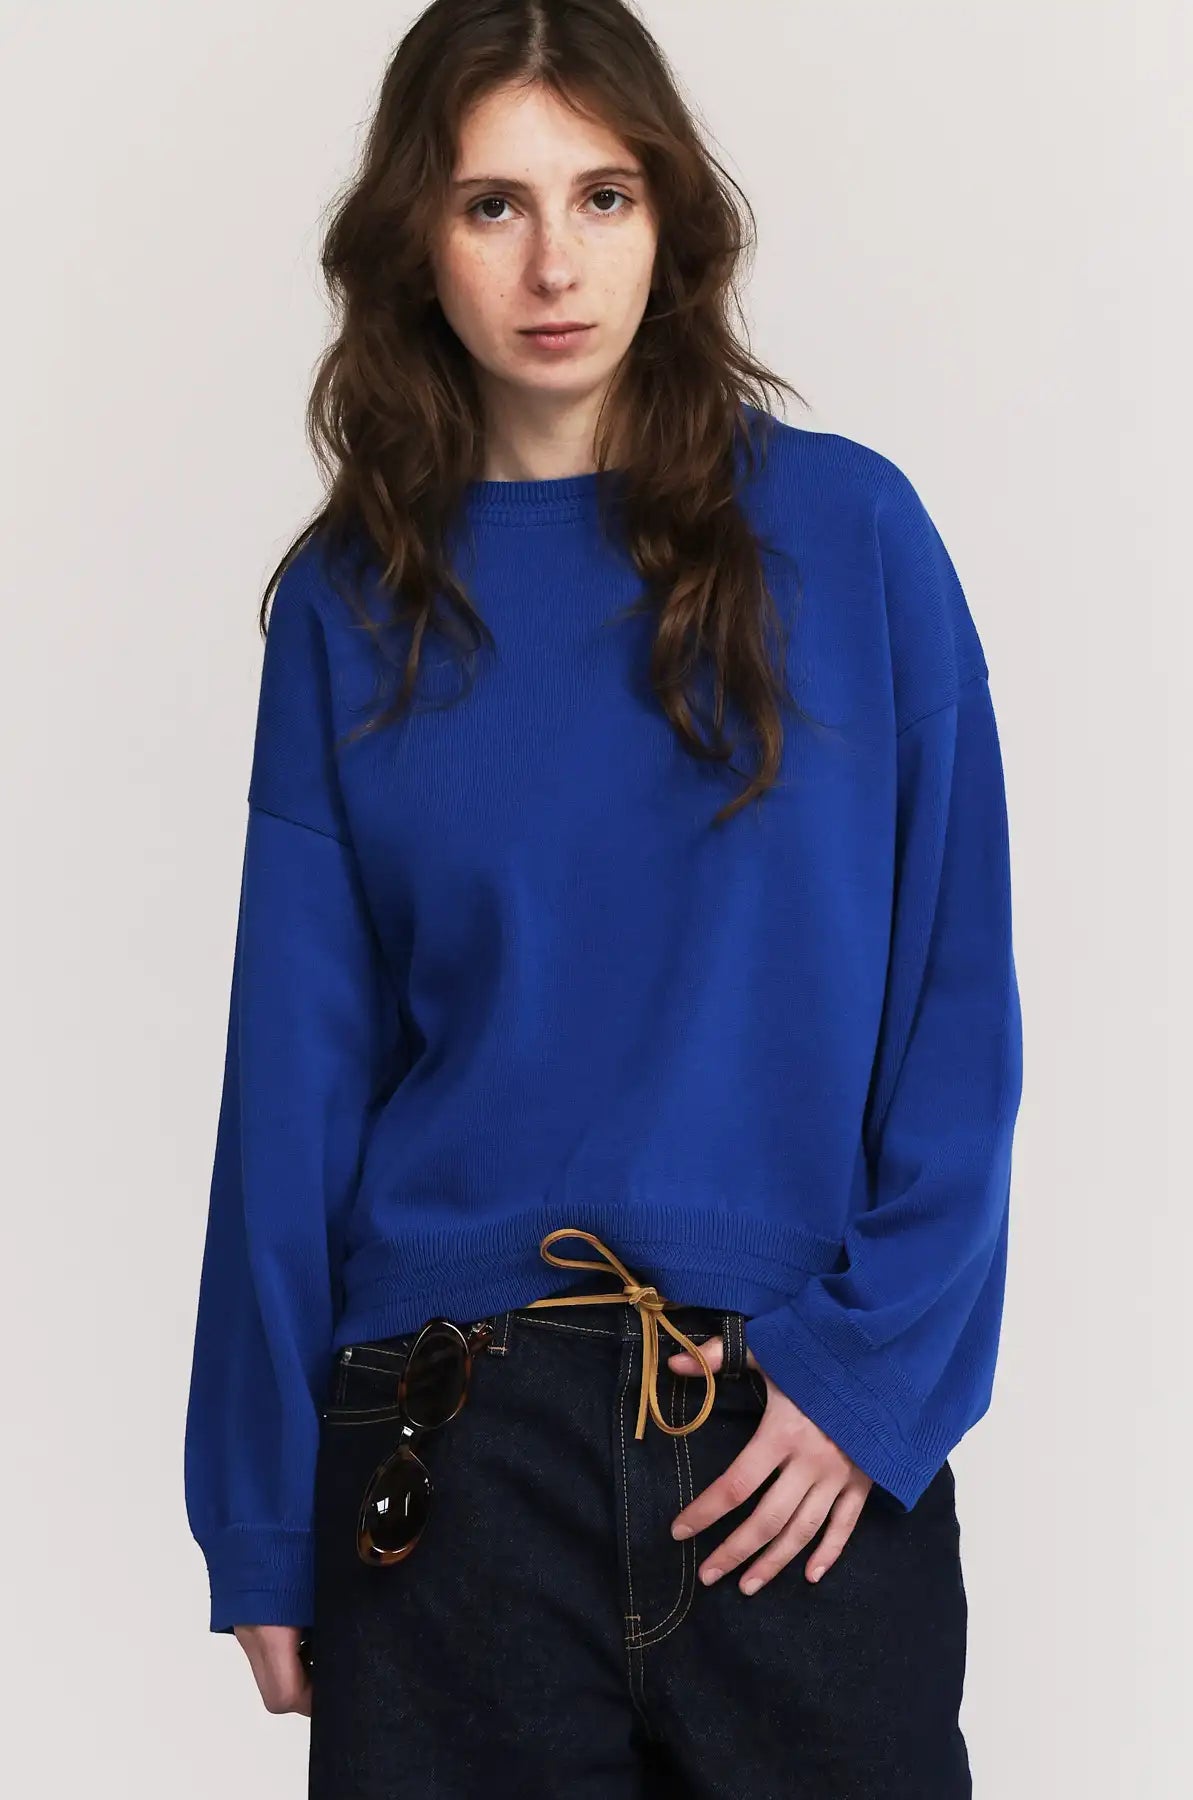 Produit maille Loucine couleur bleu tricoté par la marque Parisienne Tricots Jean Marc 1972.